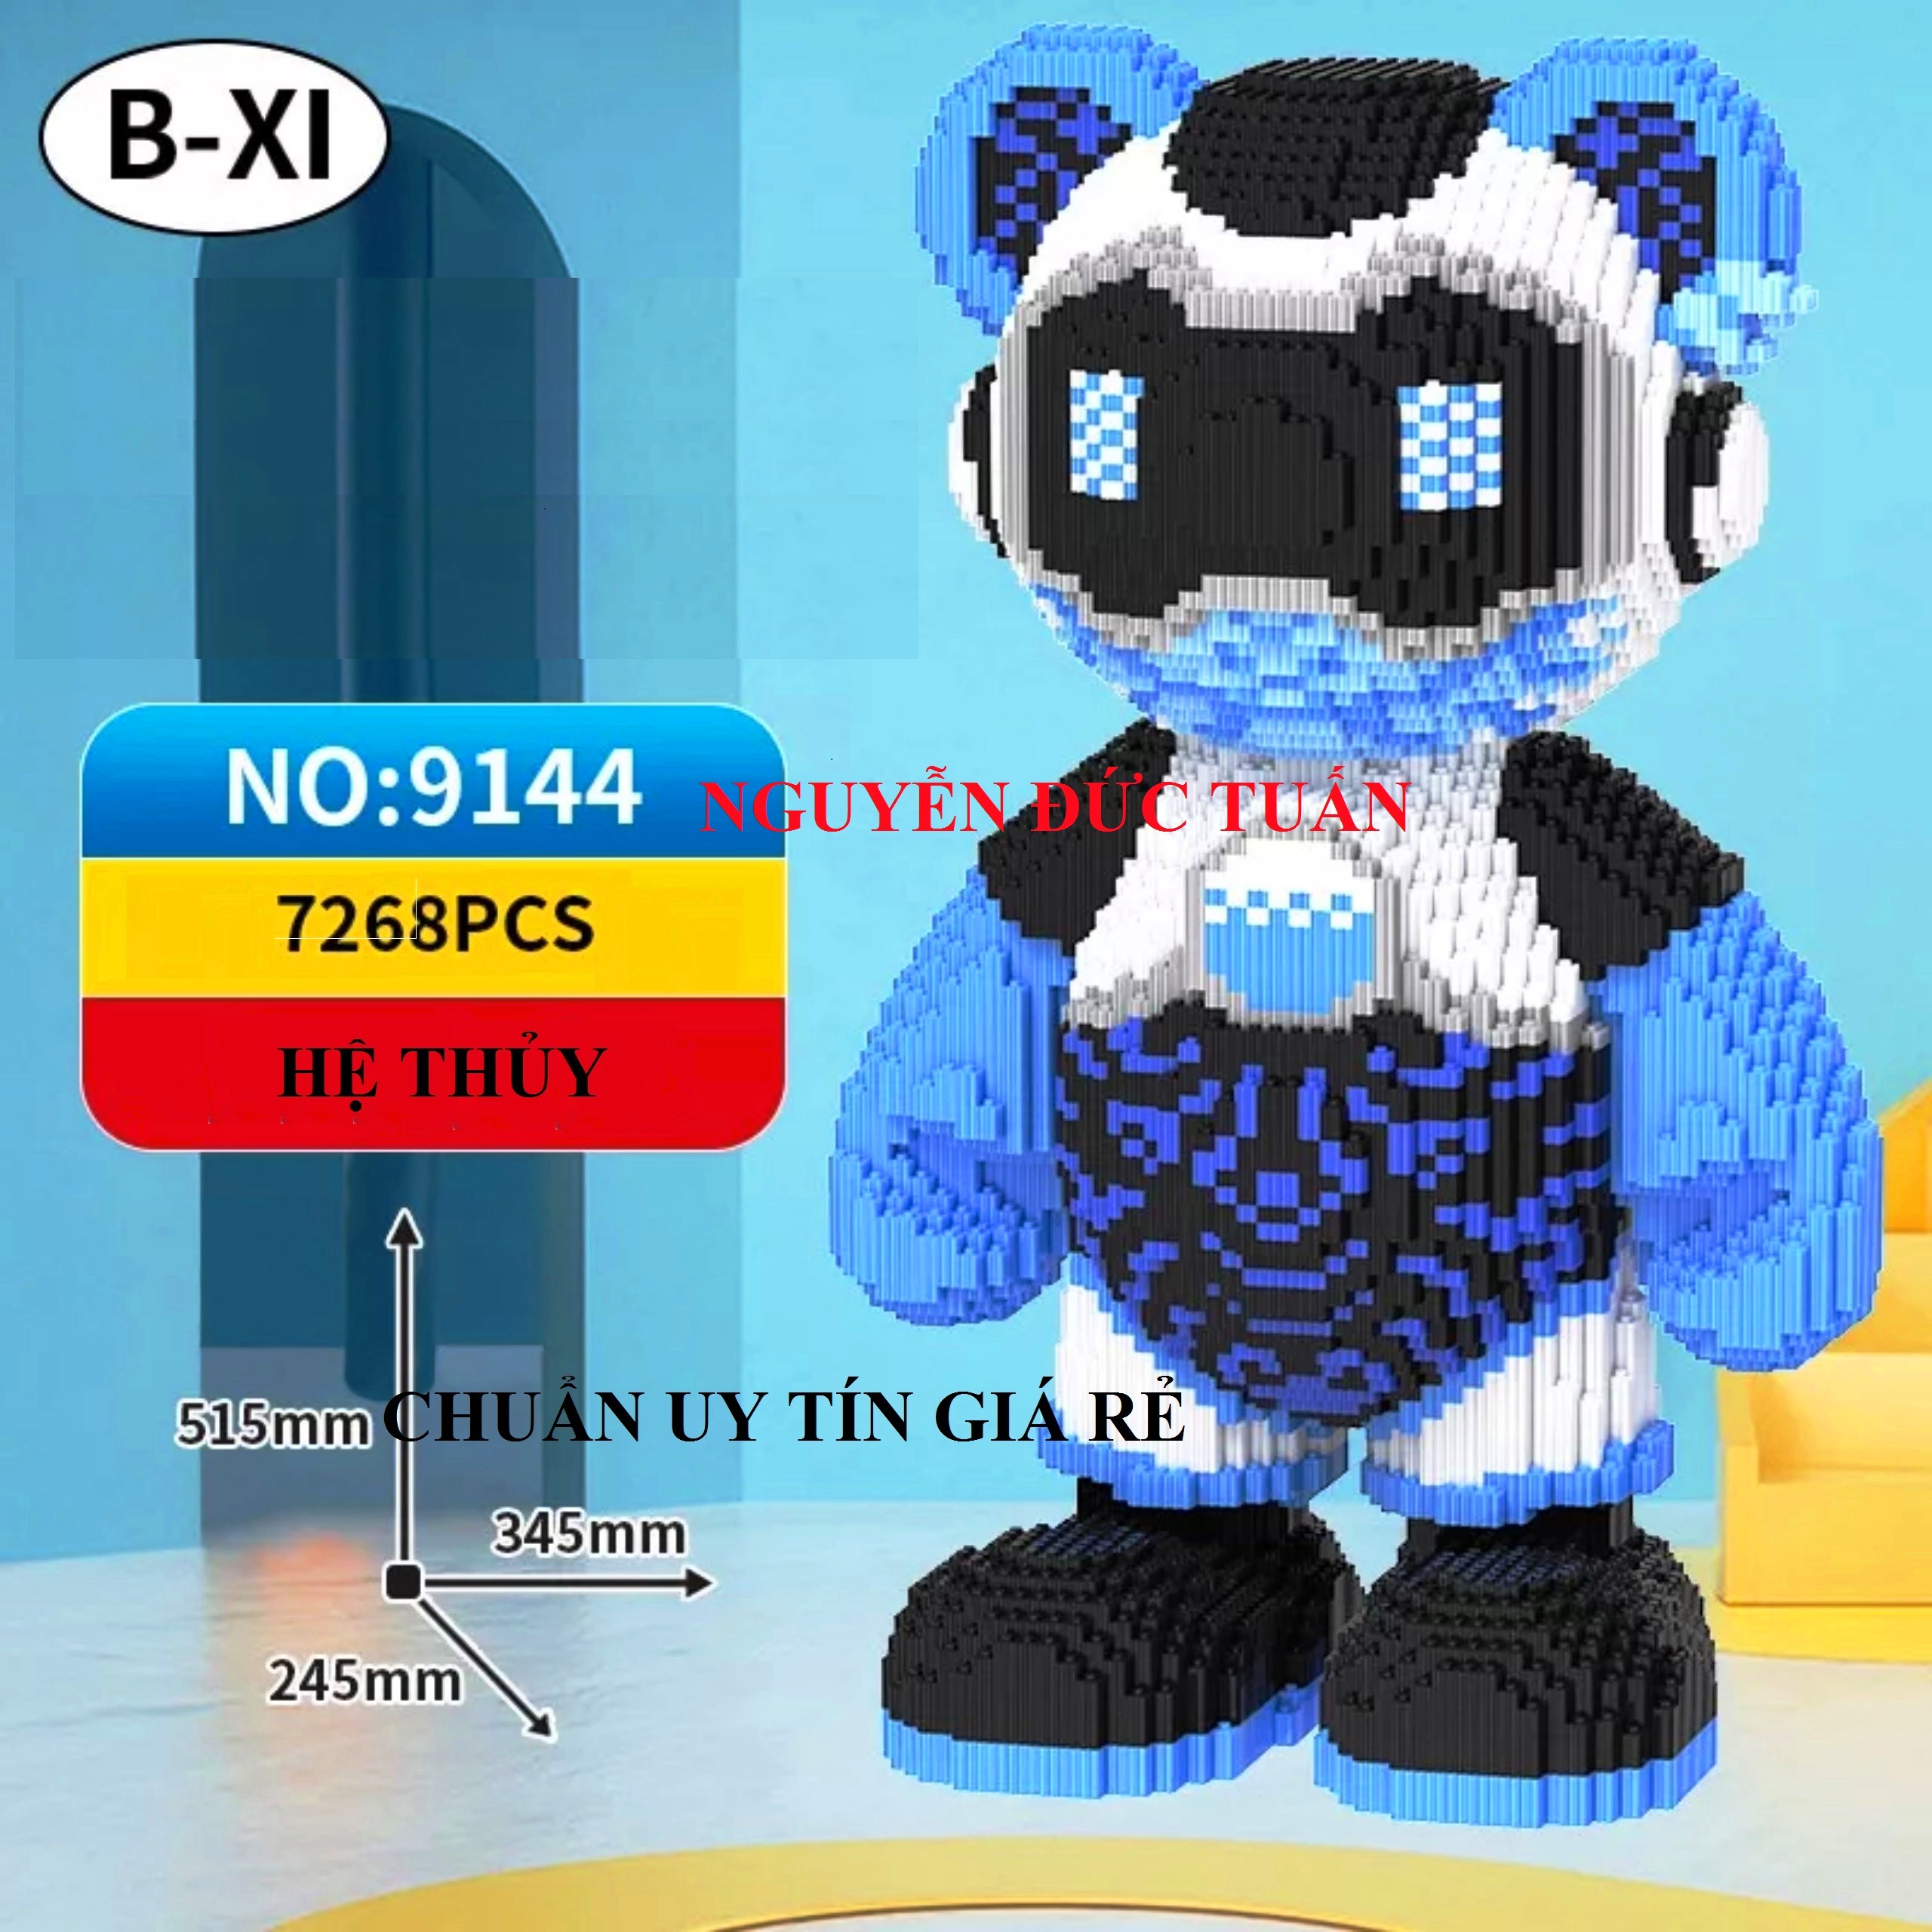 xếp hình lego bearbrick gấu ngũ hành hàng chuẩn B-XI cỡ lớn size to 52cm đồ chơi xếp hình nano 3d cho bé chuẩn mẫu tặng búa